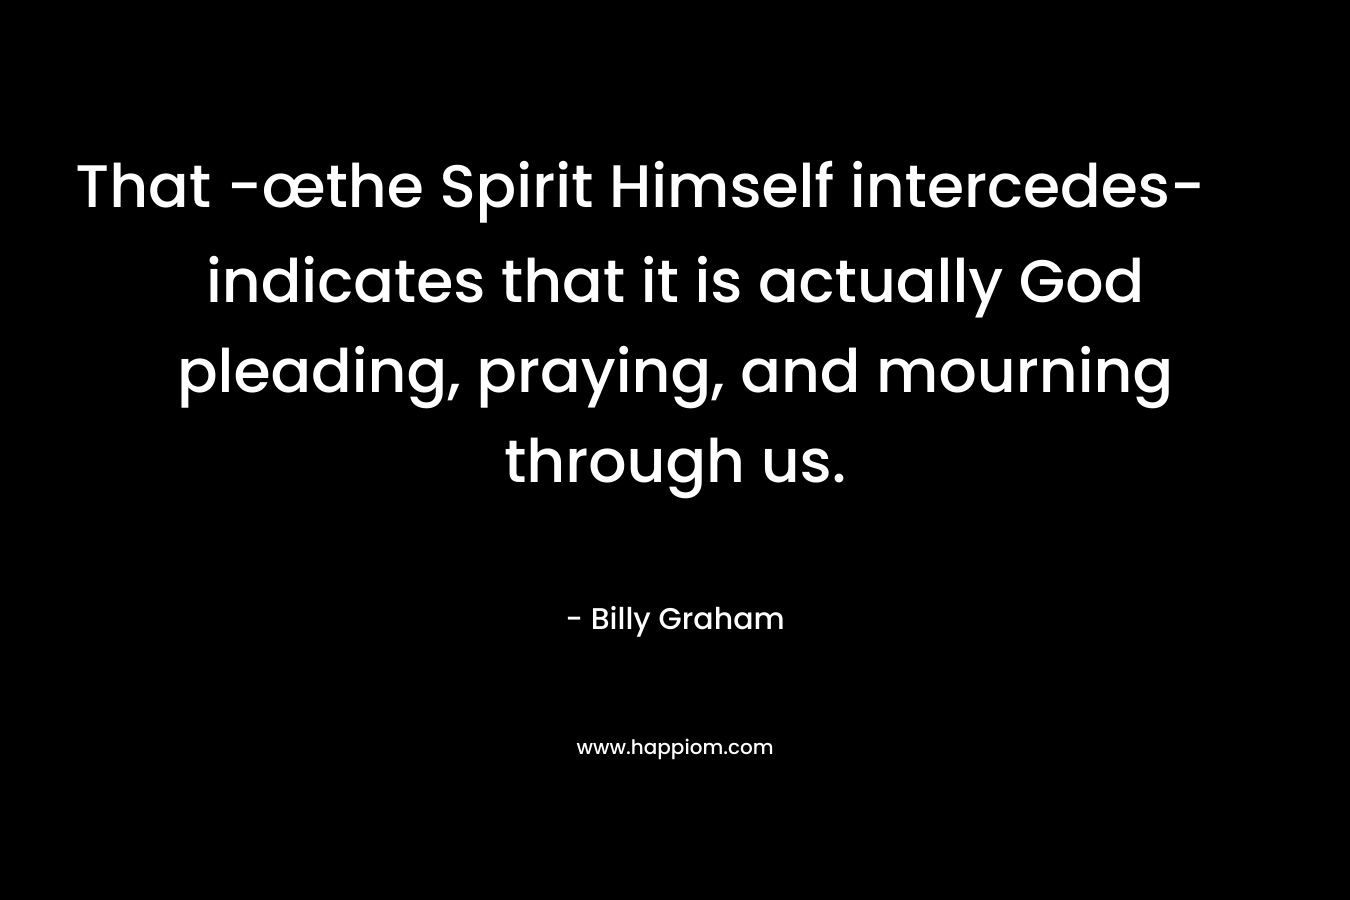 That -œthe Spirit Himself intercedes- indicates that it is actually God pleading, praying, and mourning through us. – Billy Graham